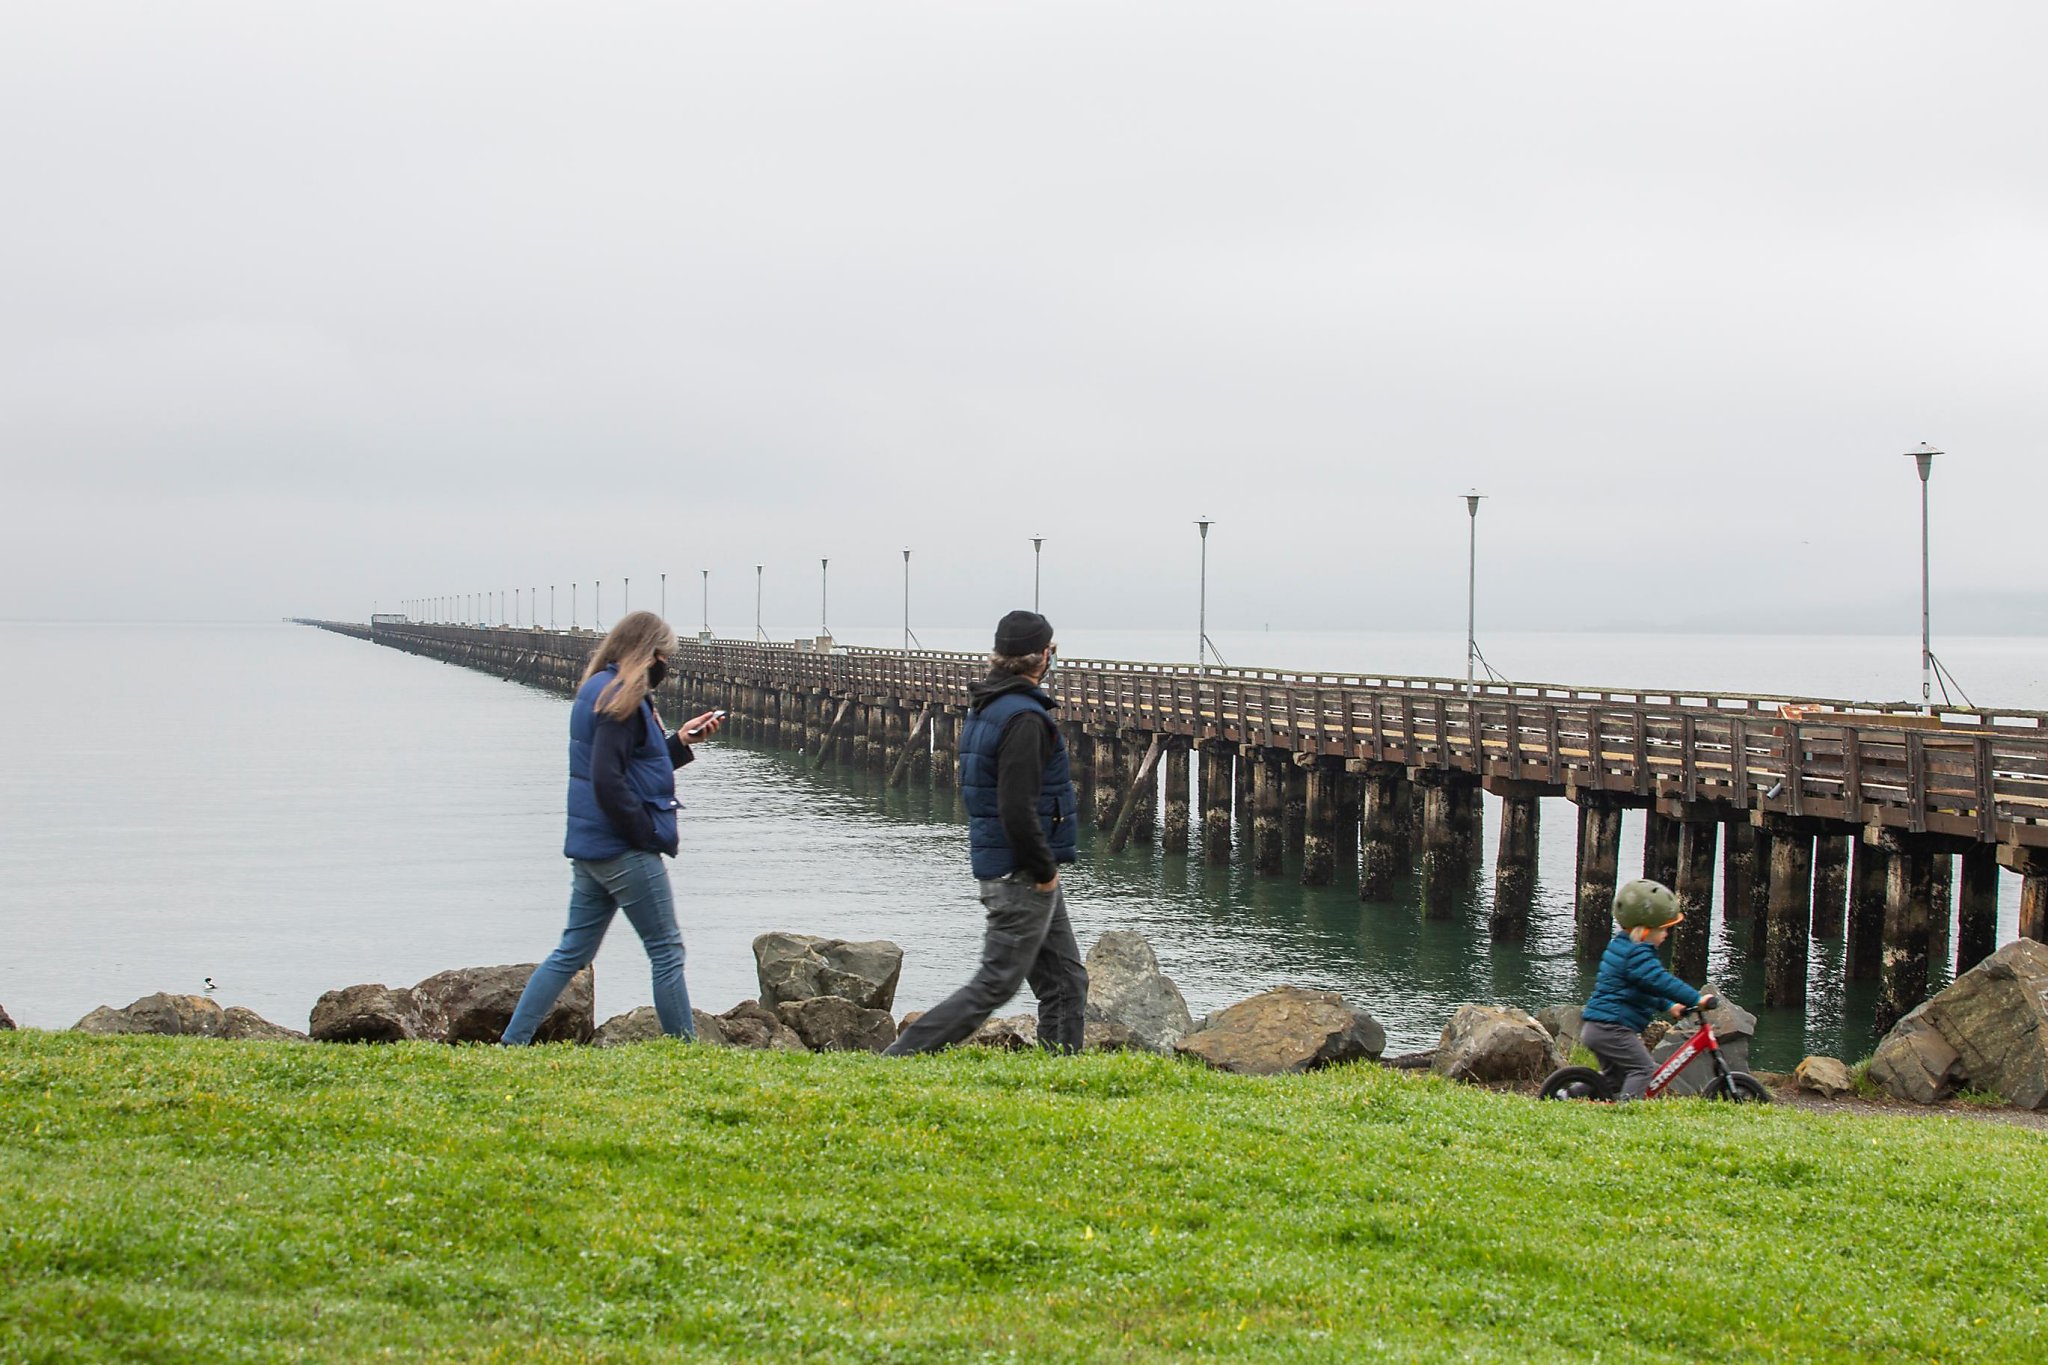 Doolittle Pier — Oakland - Pier Fishing in California